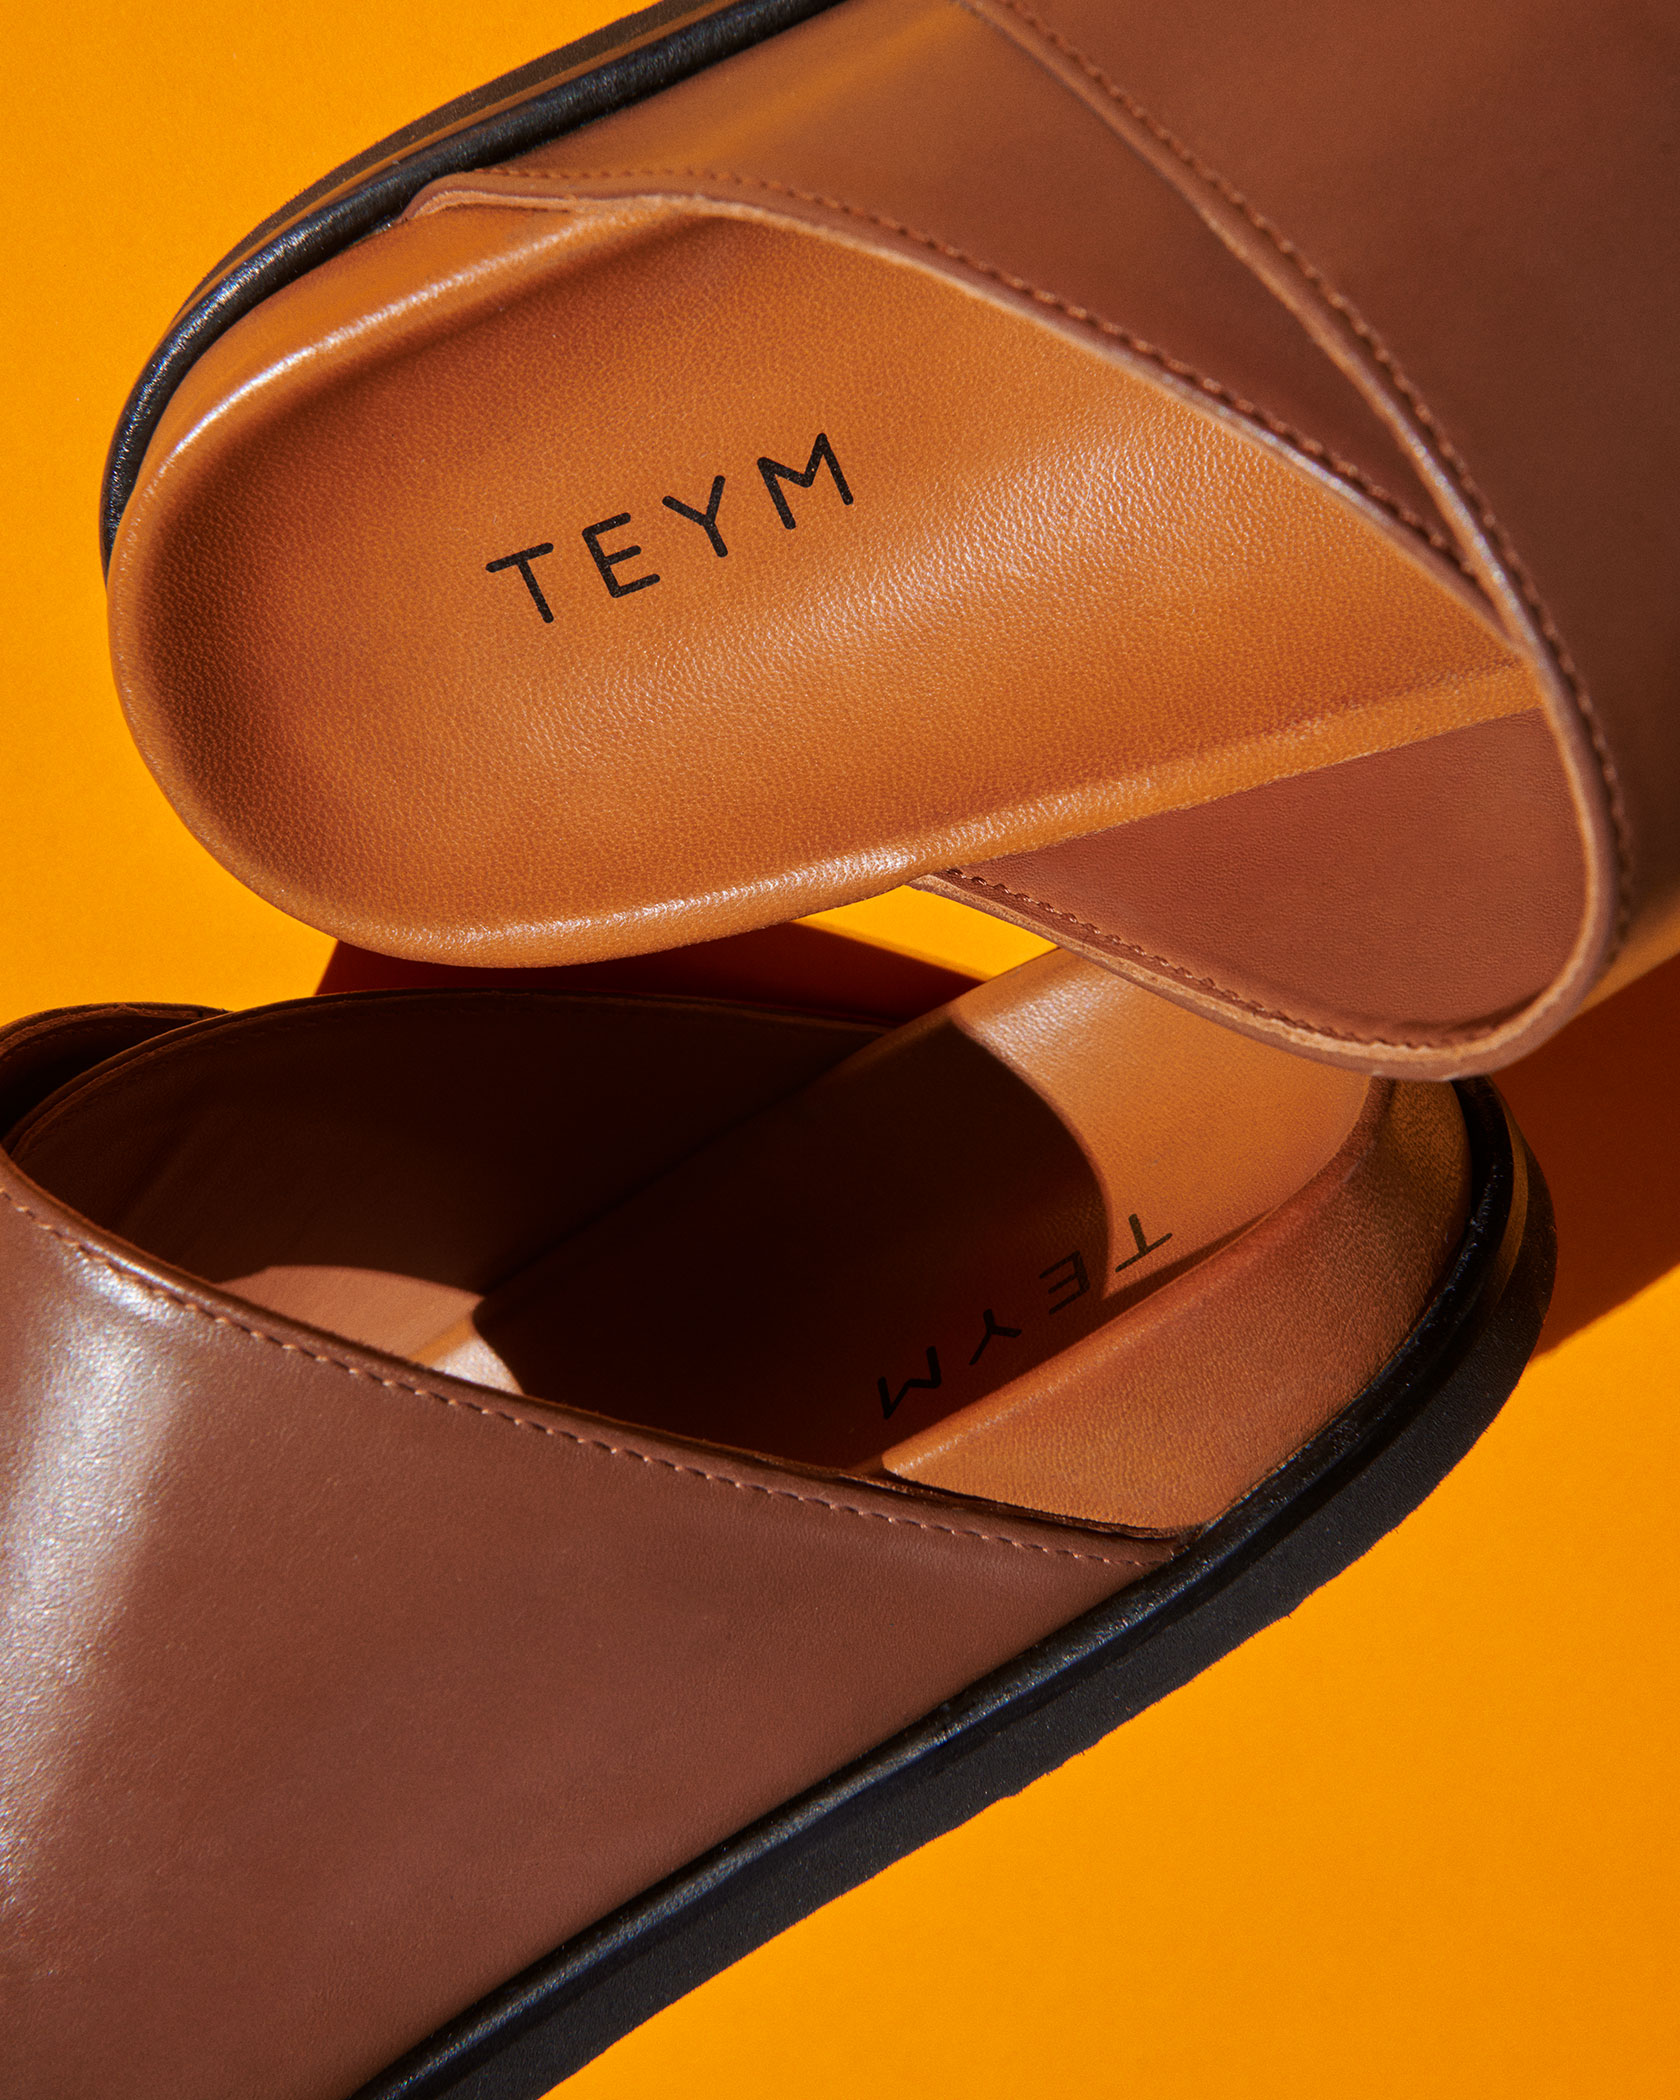 Teym - Hero - Homepage - The Sandal - Mobile